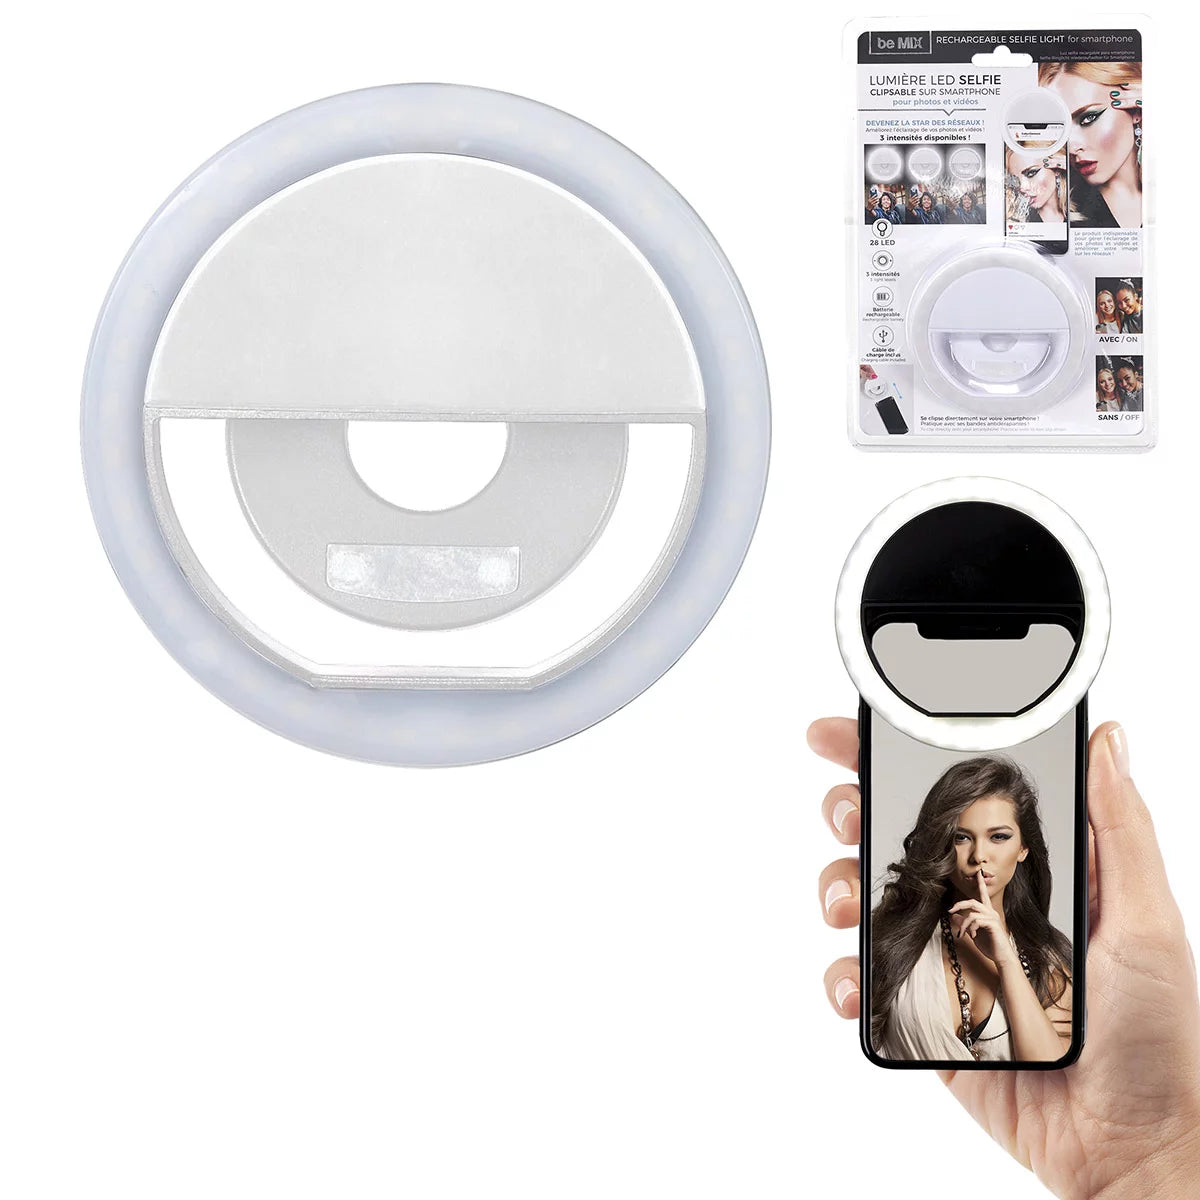 Lumière LED selfie rechargeable pour smartphone – Funso shop